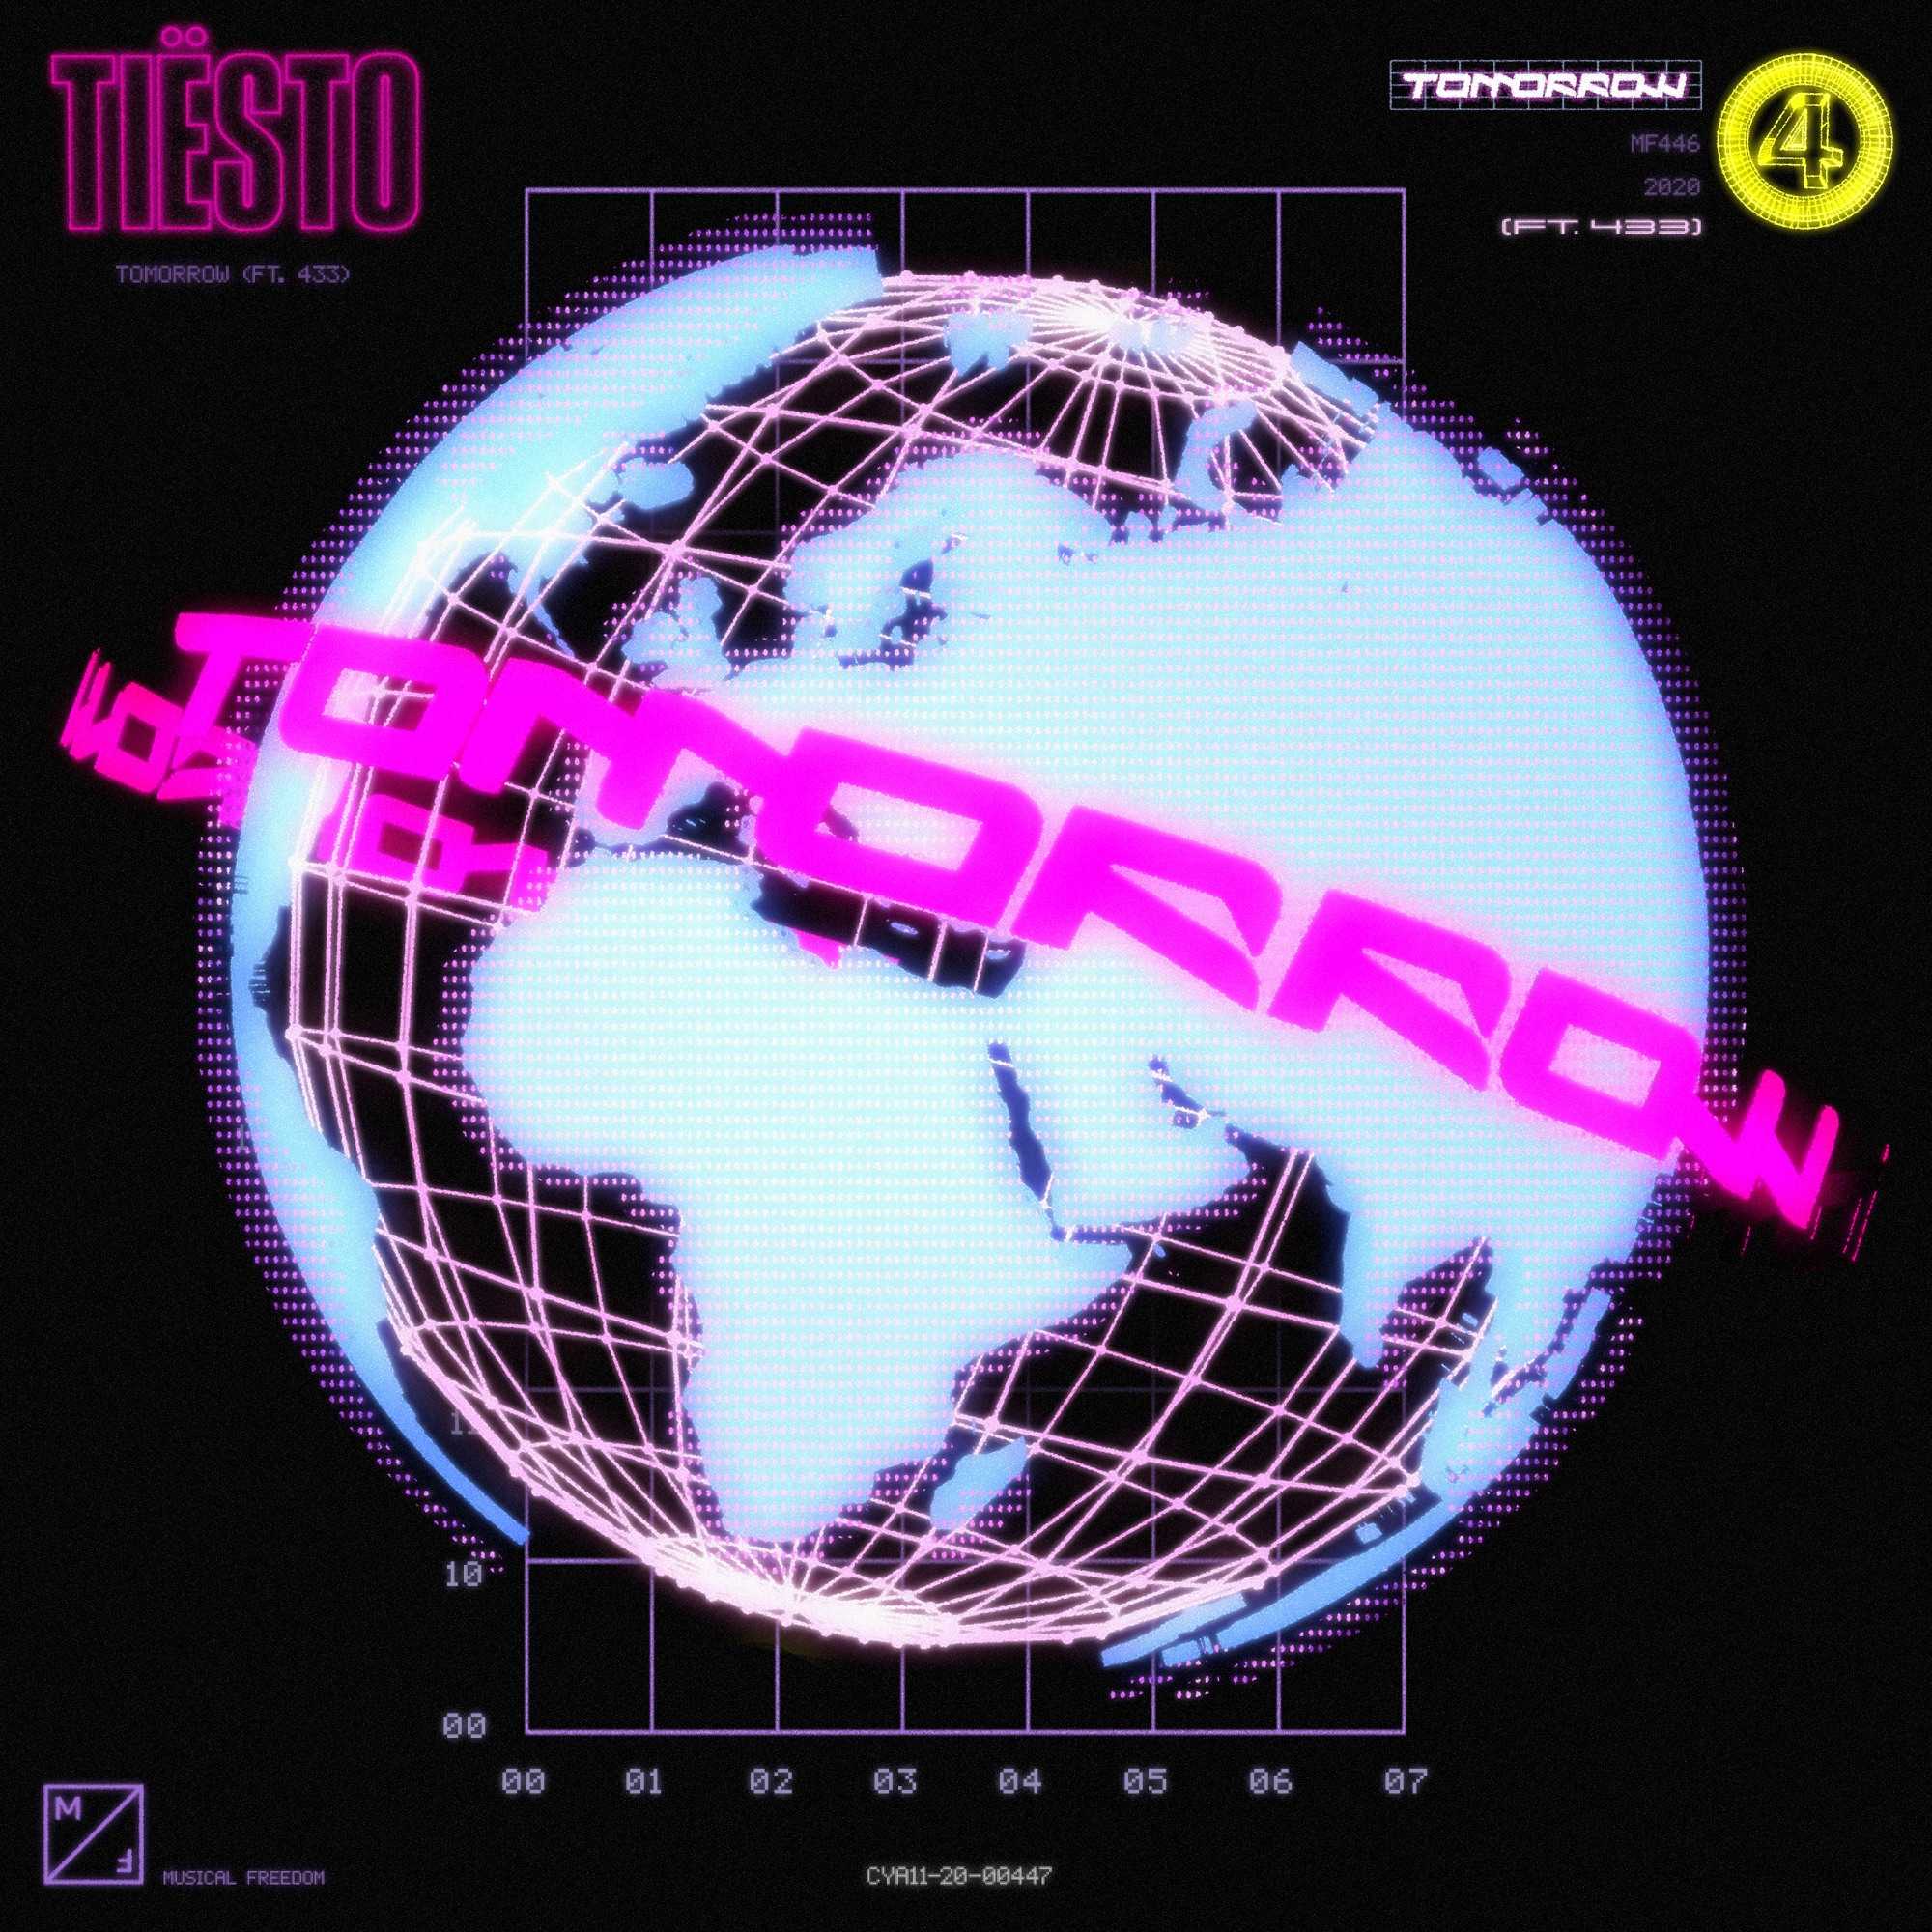 Tiesto - Tomorrow